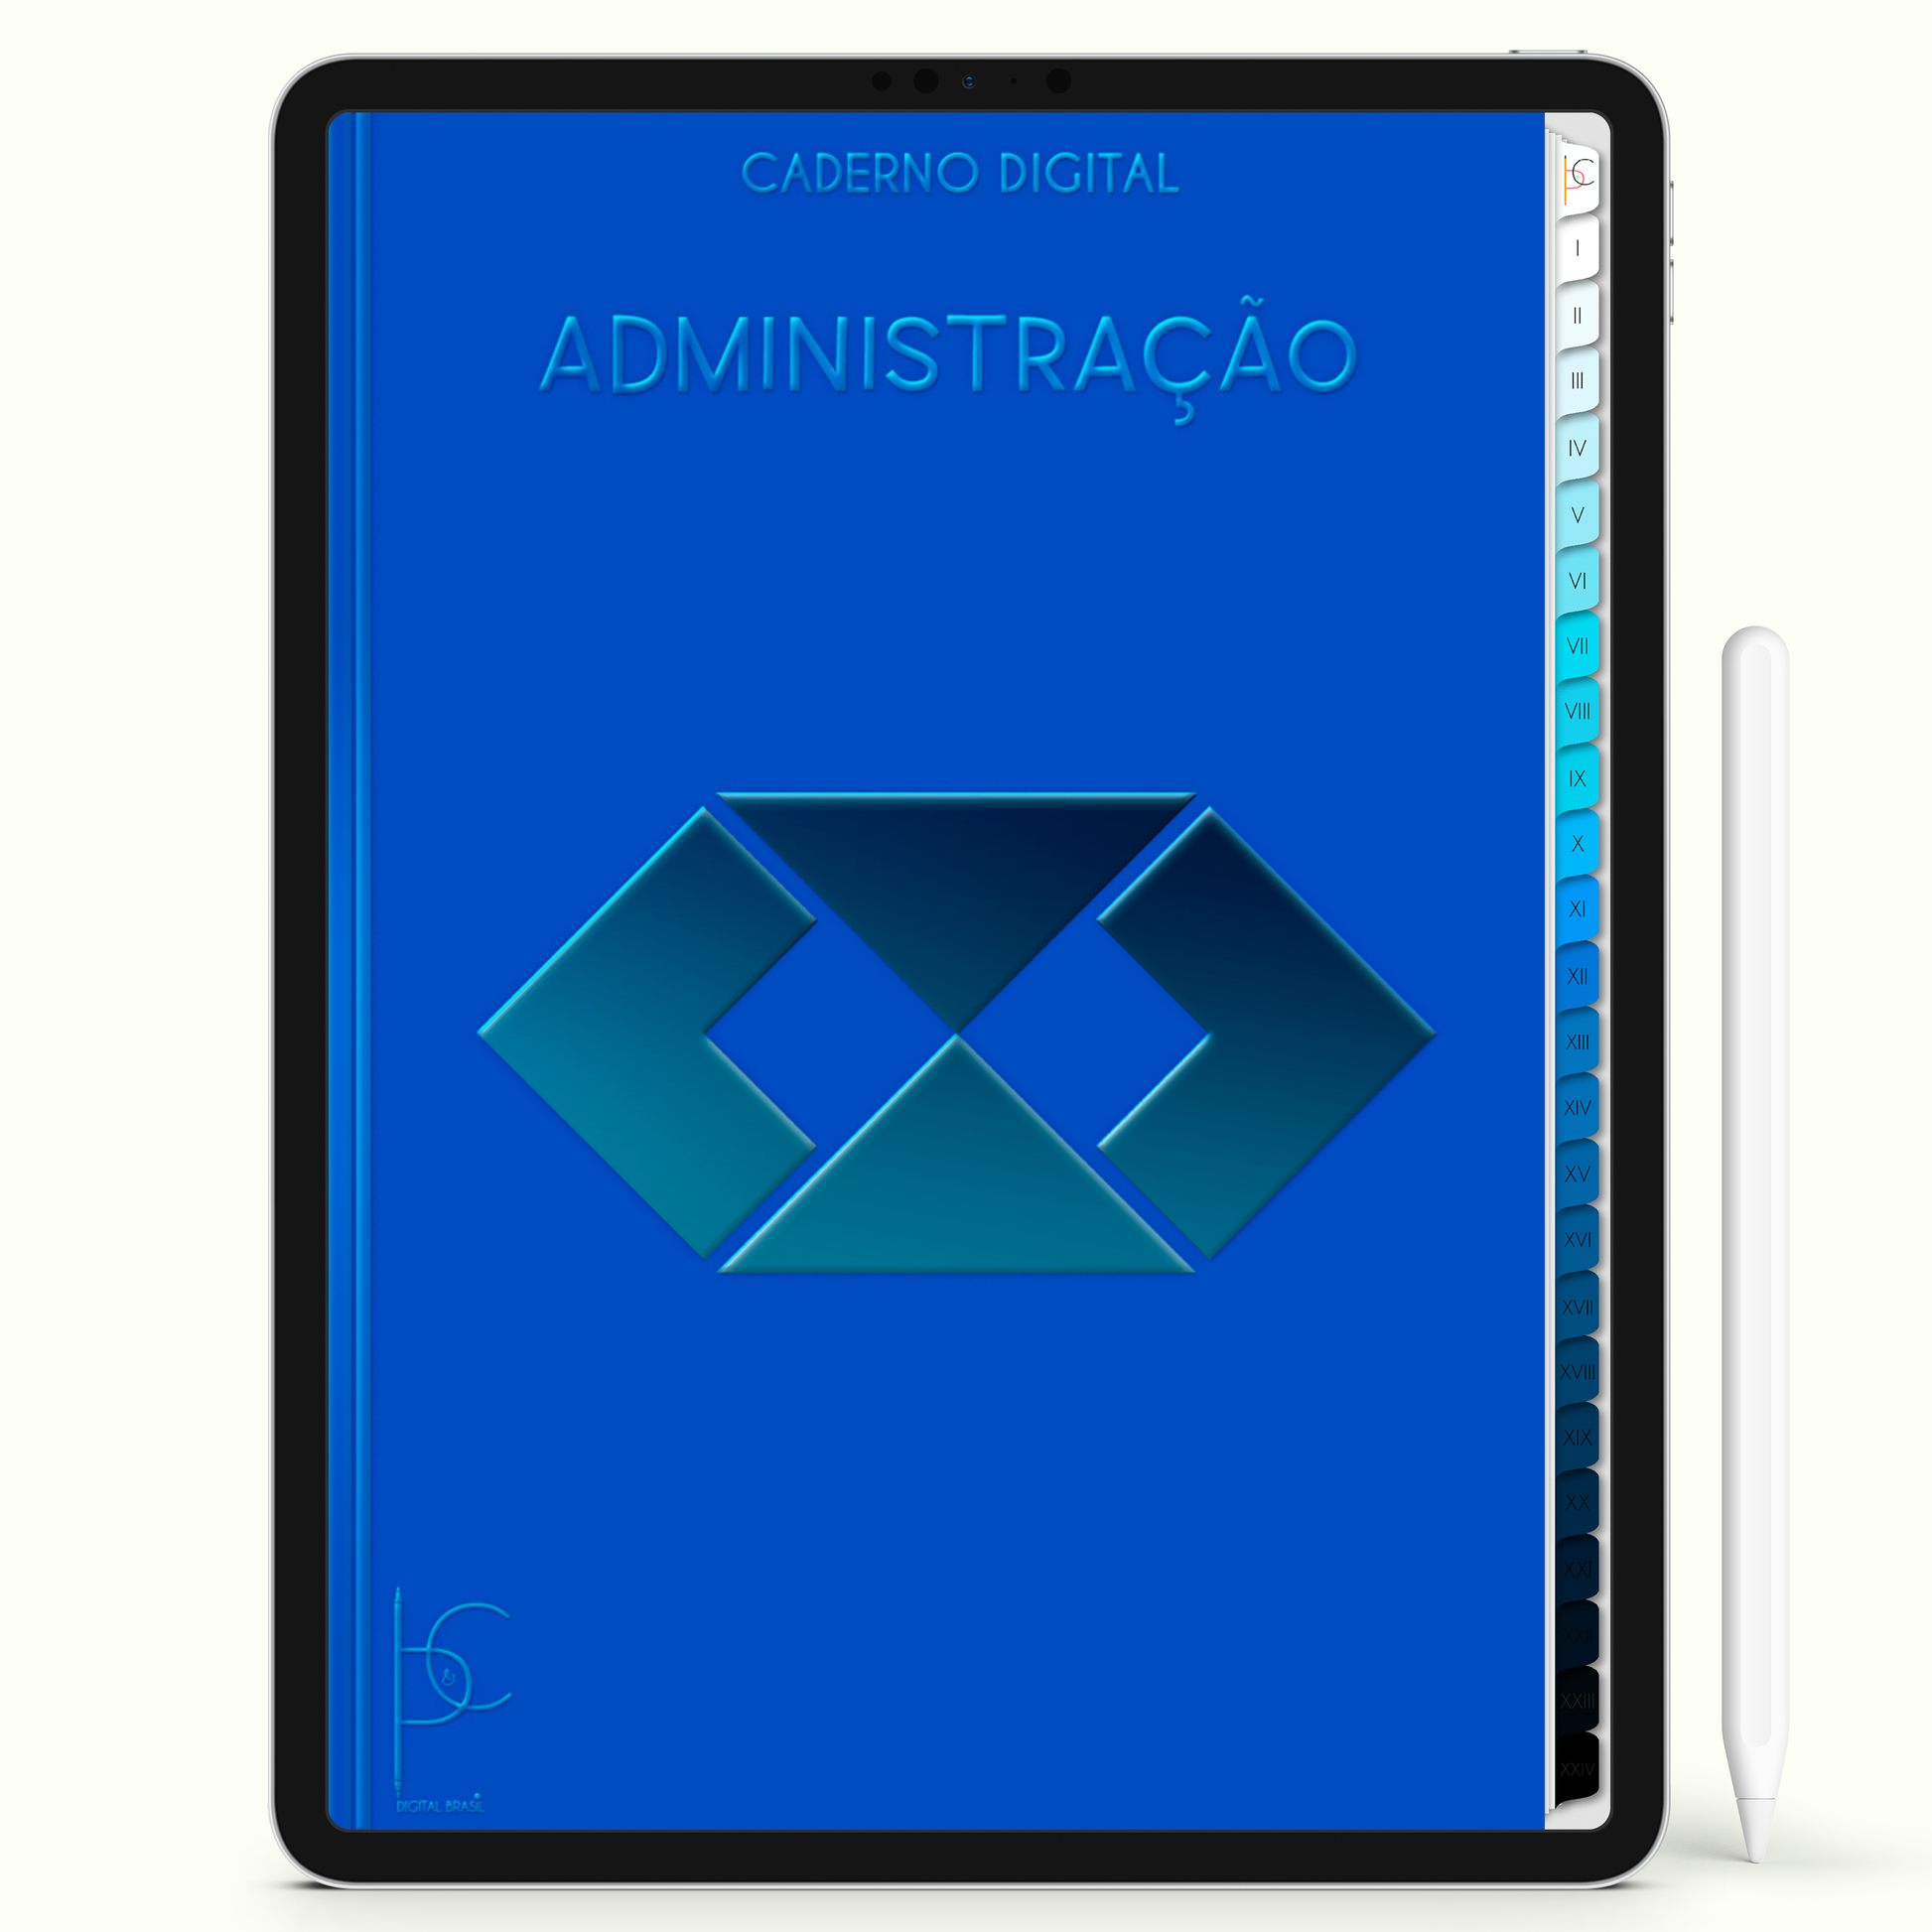 Caderno Digital 24 matérias - Administração para ipad e tablet android - Cadernos & Planner Digital Brasil